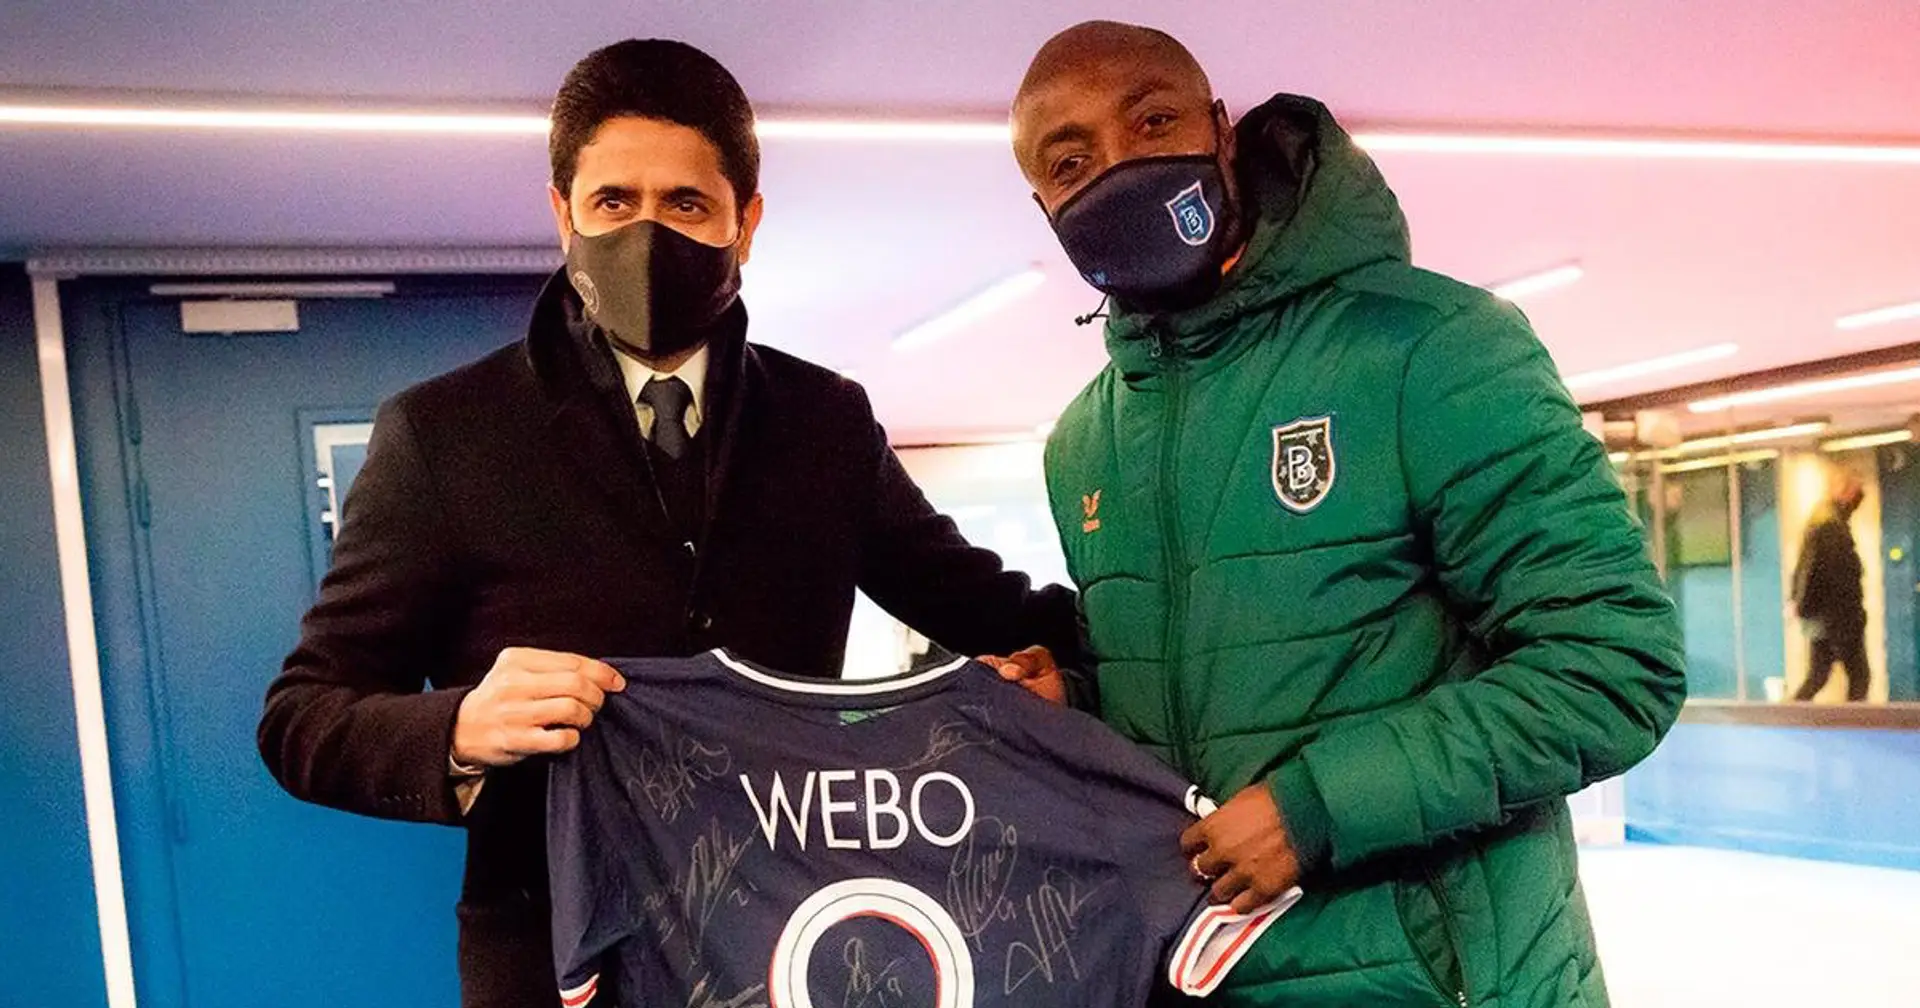 Webo exprime sa gratitude envers "tous les joueurs du PSG, le club et tous ceux qui étaient là pour leur solidarité"